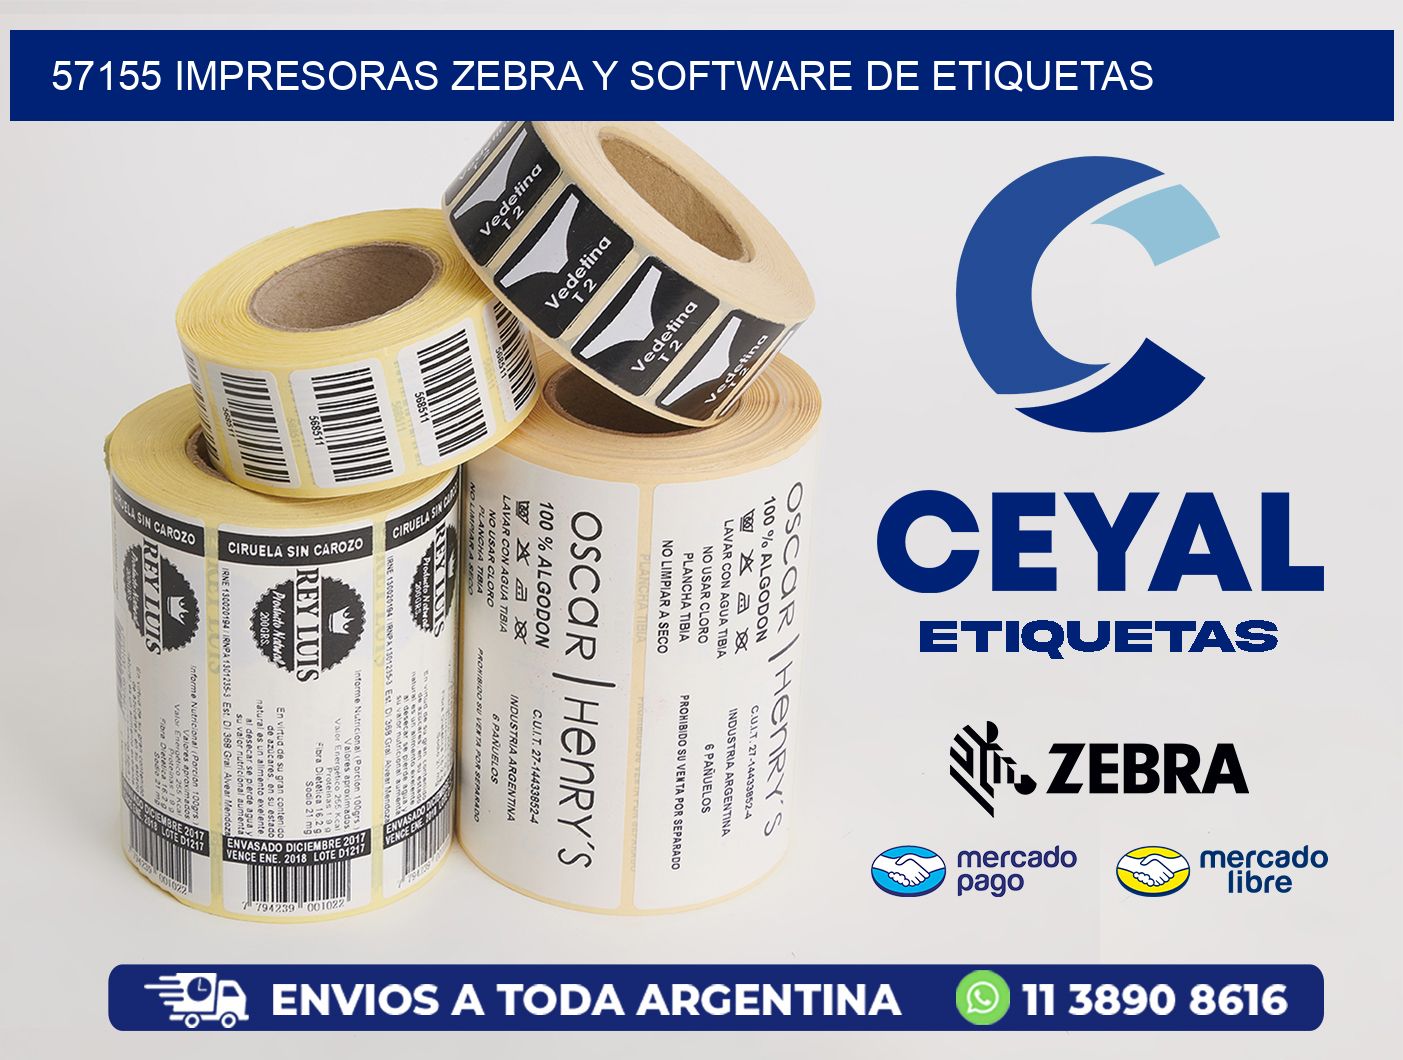 57155 Impresoras Zebra y Software de Etiquetas